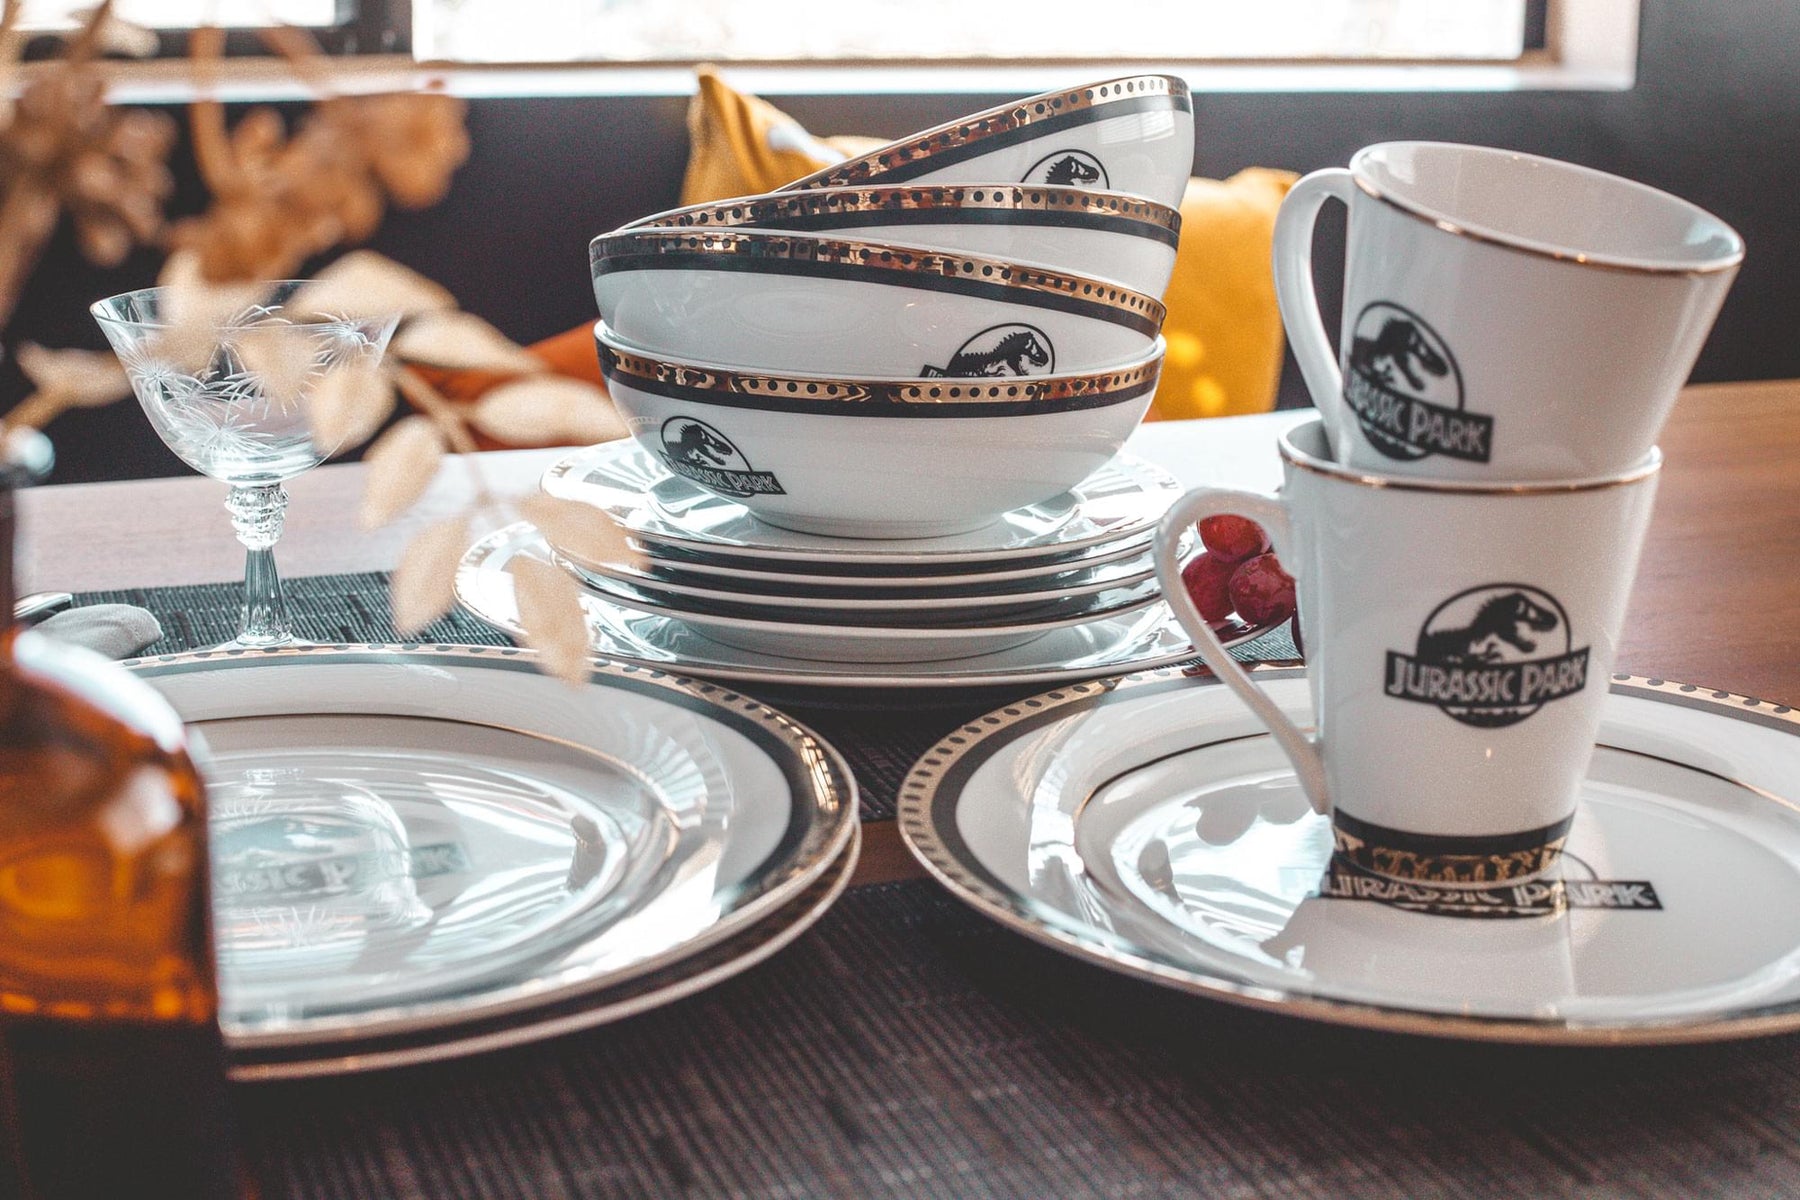 Jurassic Park Logo 16-Piece Ceramic Dinnerware Set Replica | Plates, Bowls, Mugs